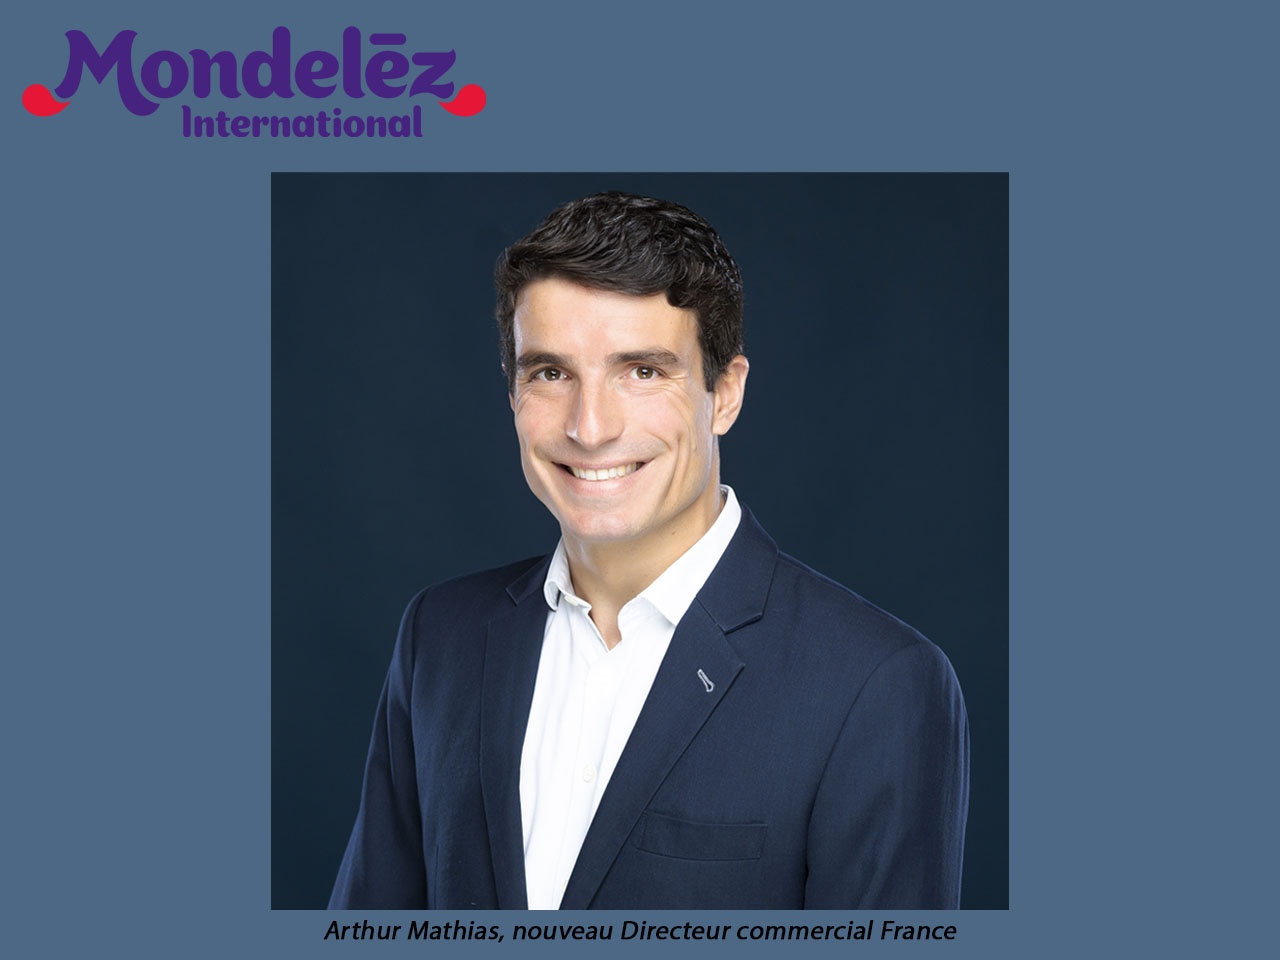 Mondelez International nomme Arthur Mathias en tant que Directeur commercial France